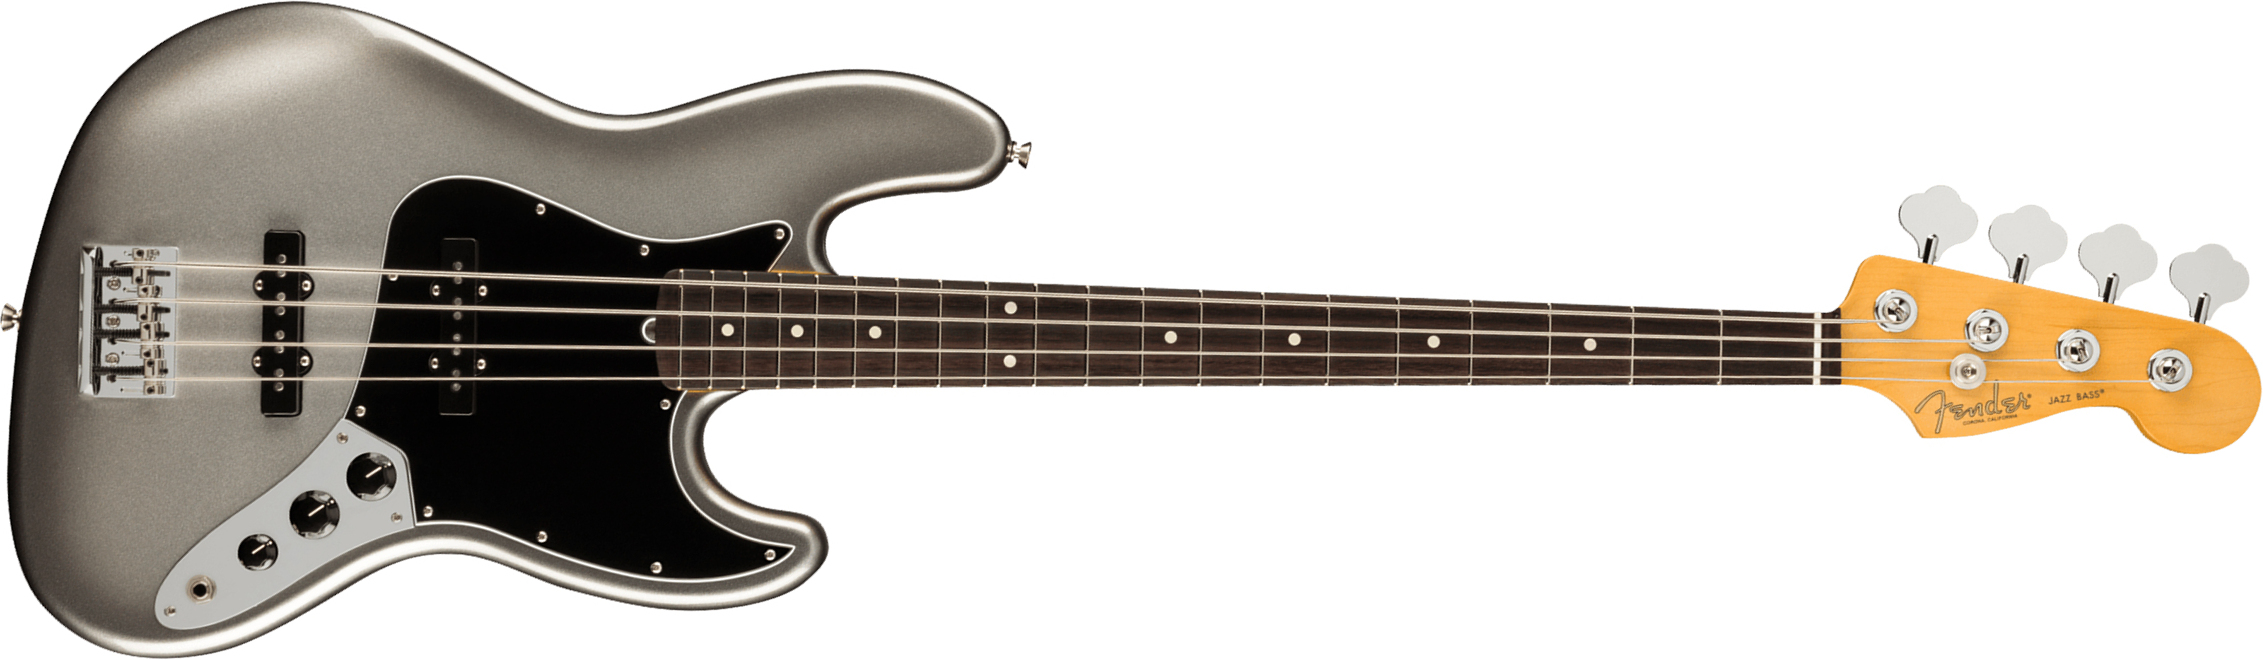 Fender Jazz Bass American Professional Ii Usa Rw - Mercury - Bajo eléctrico de cuerpo sólido - Main picture